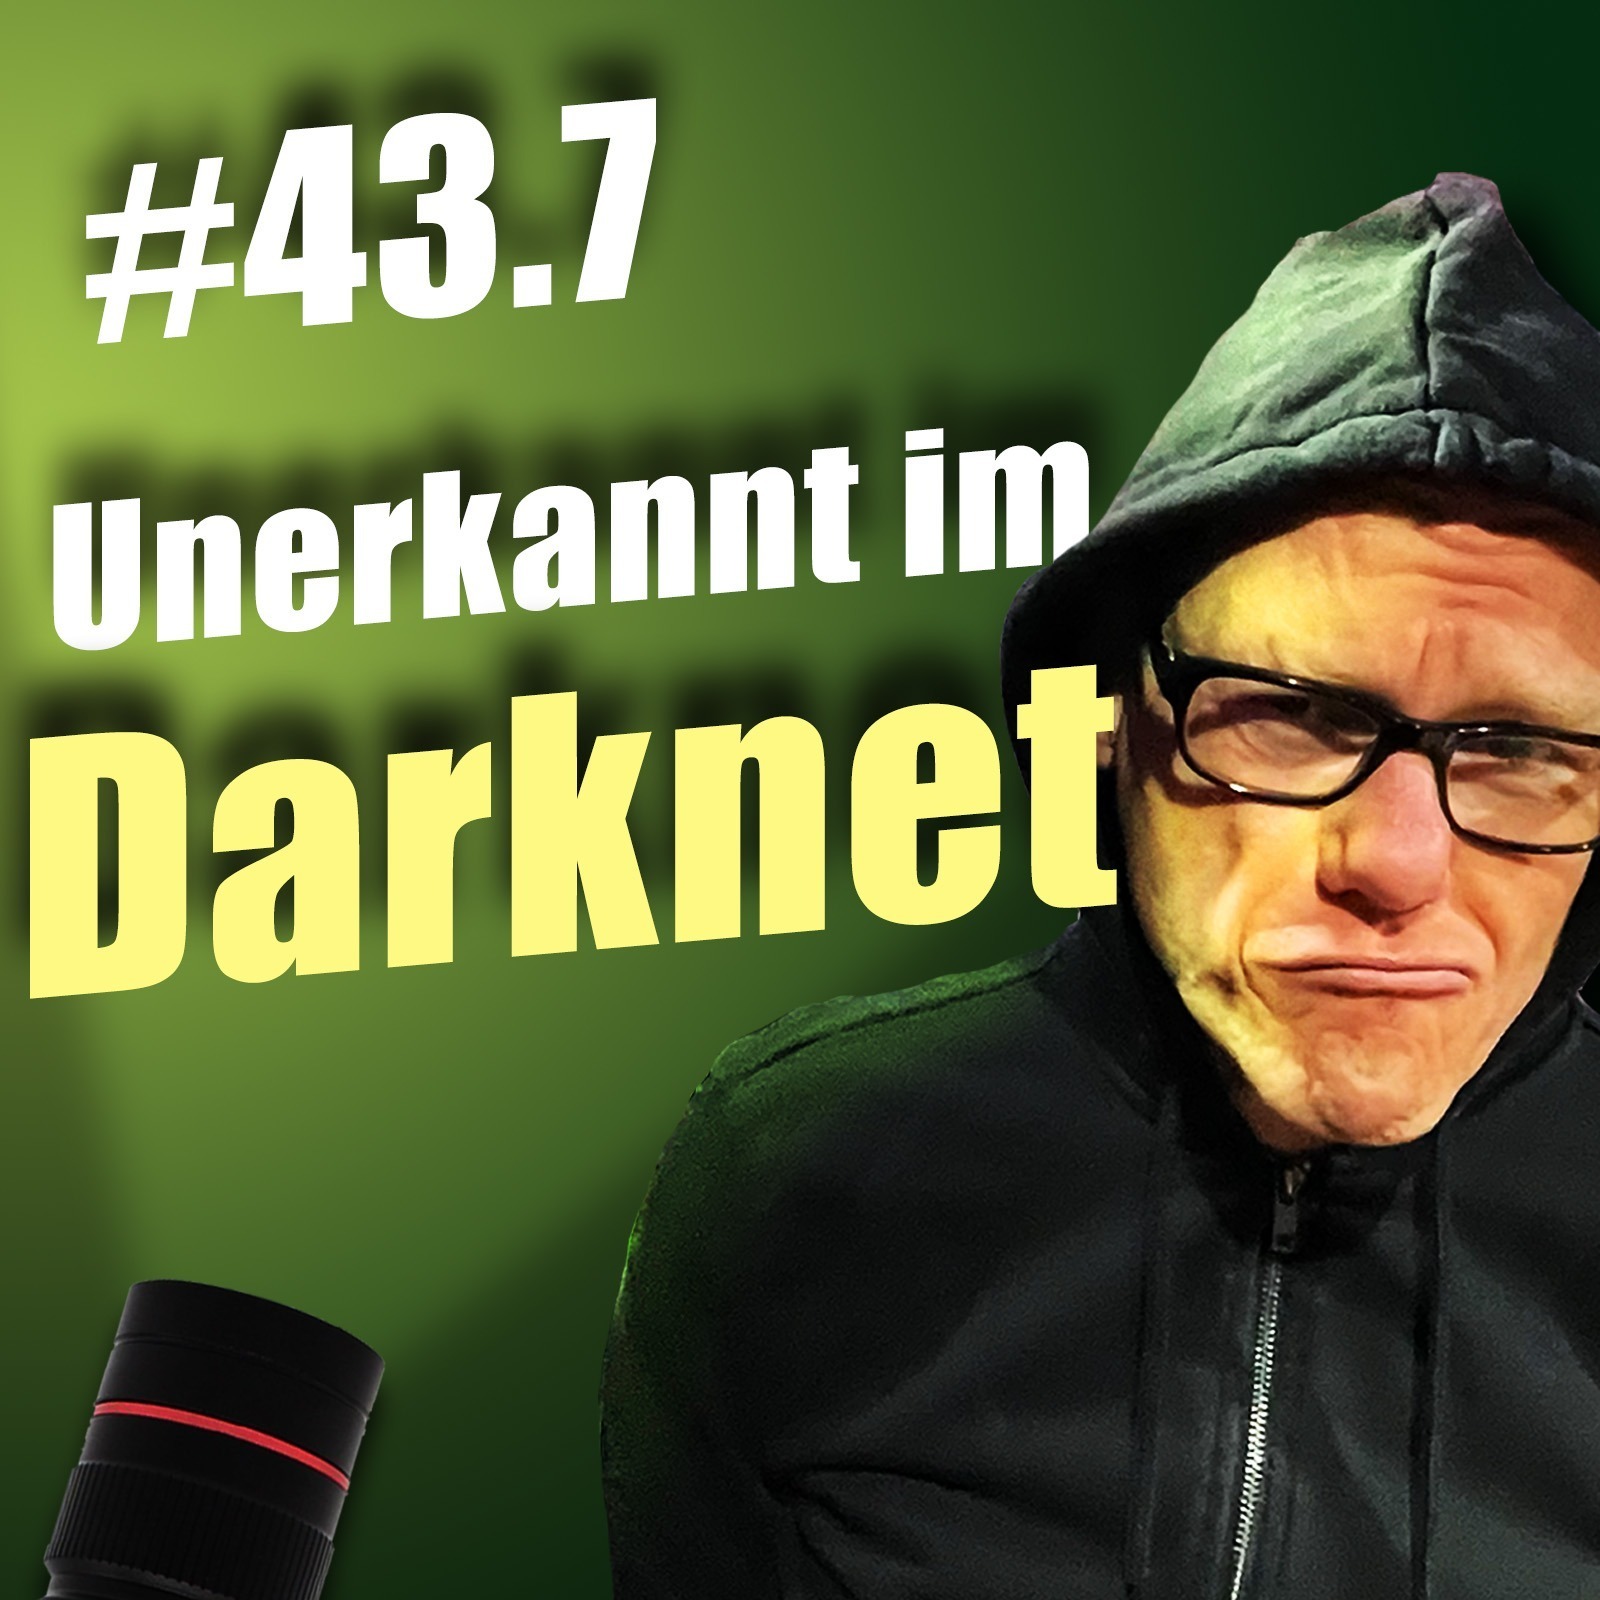 Wofür Darknet und Tor wichtig sind | c’t uplink 43.7